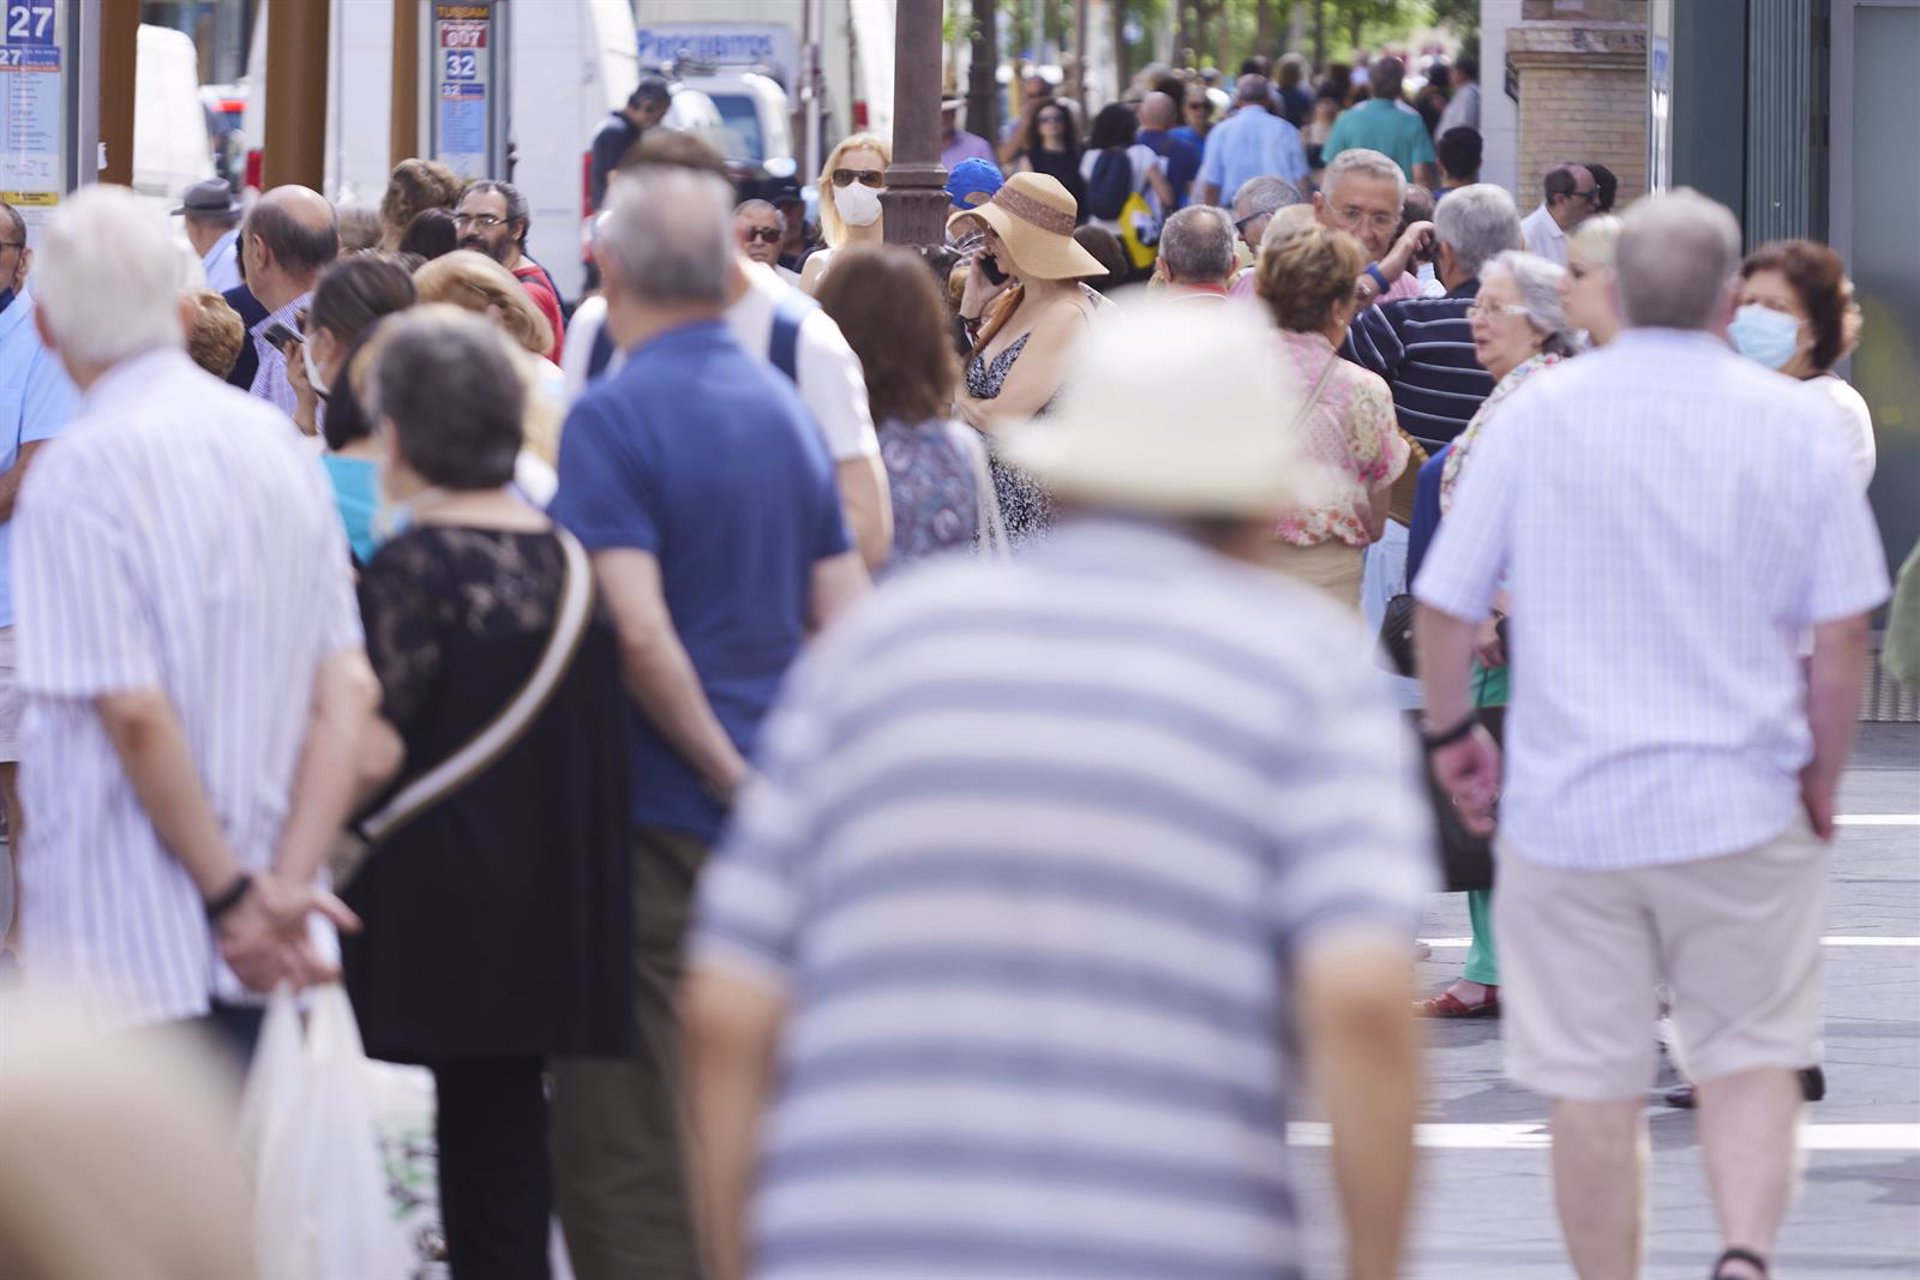 Detalle de gente en las calles, a 21 de junio de 2022 en Sevilla